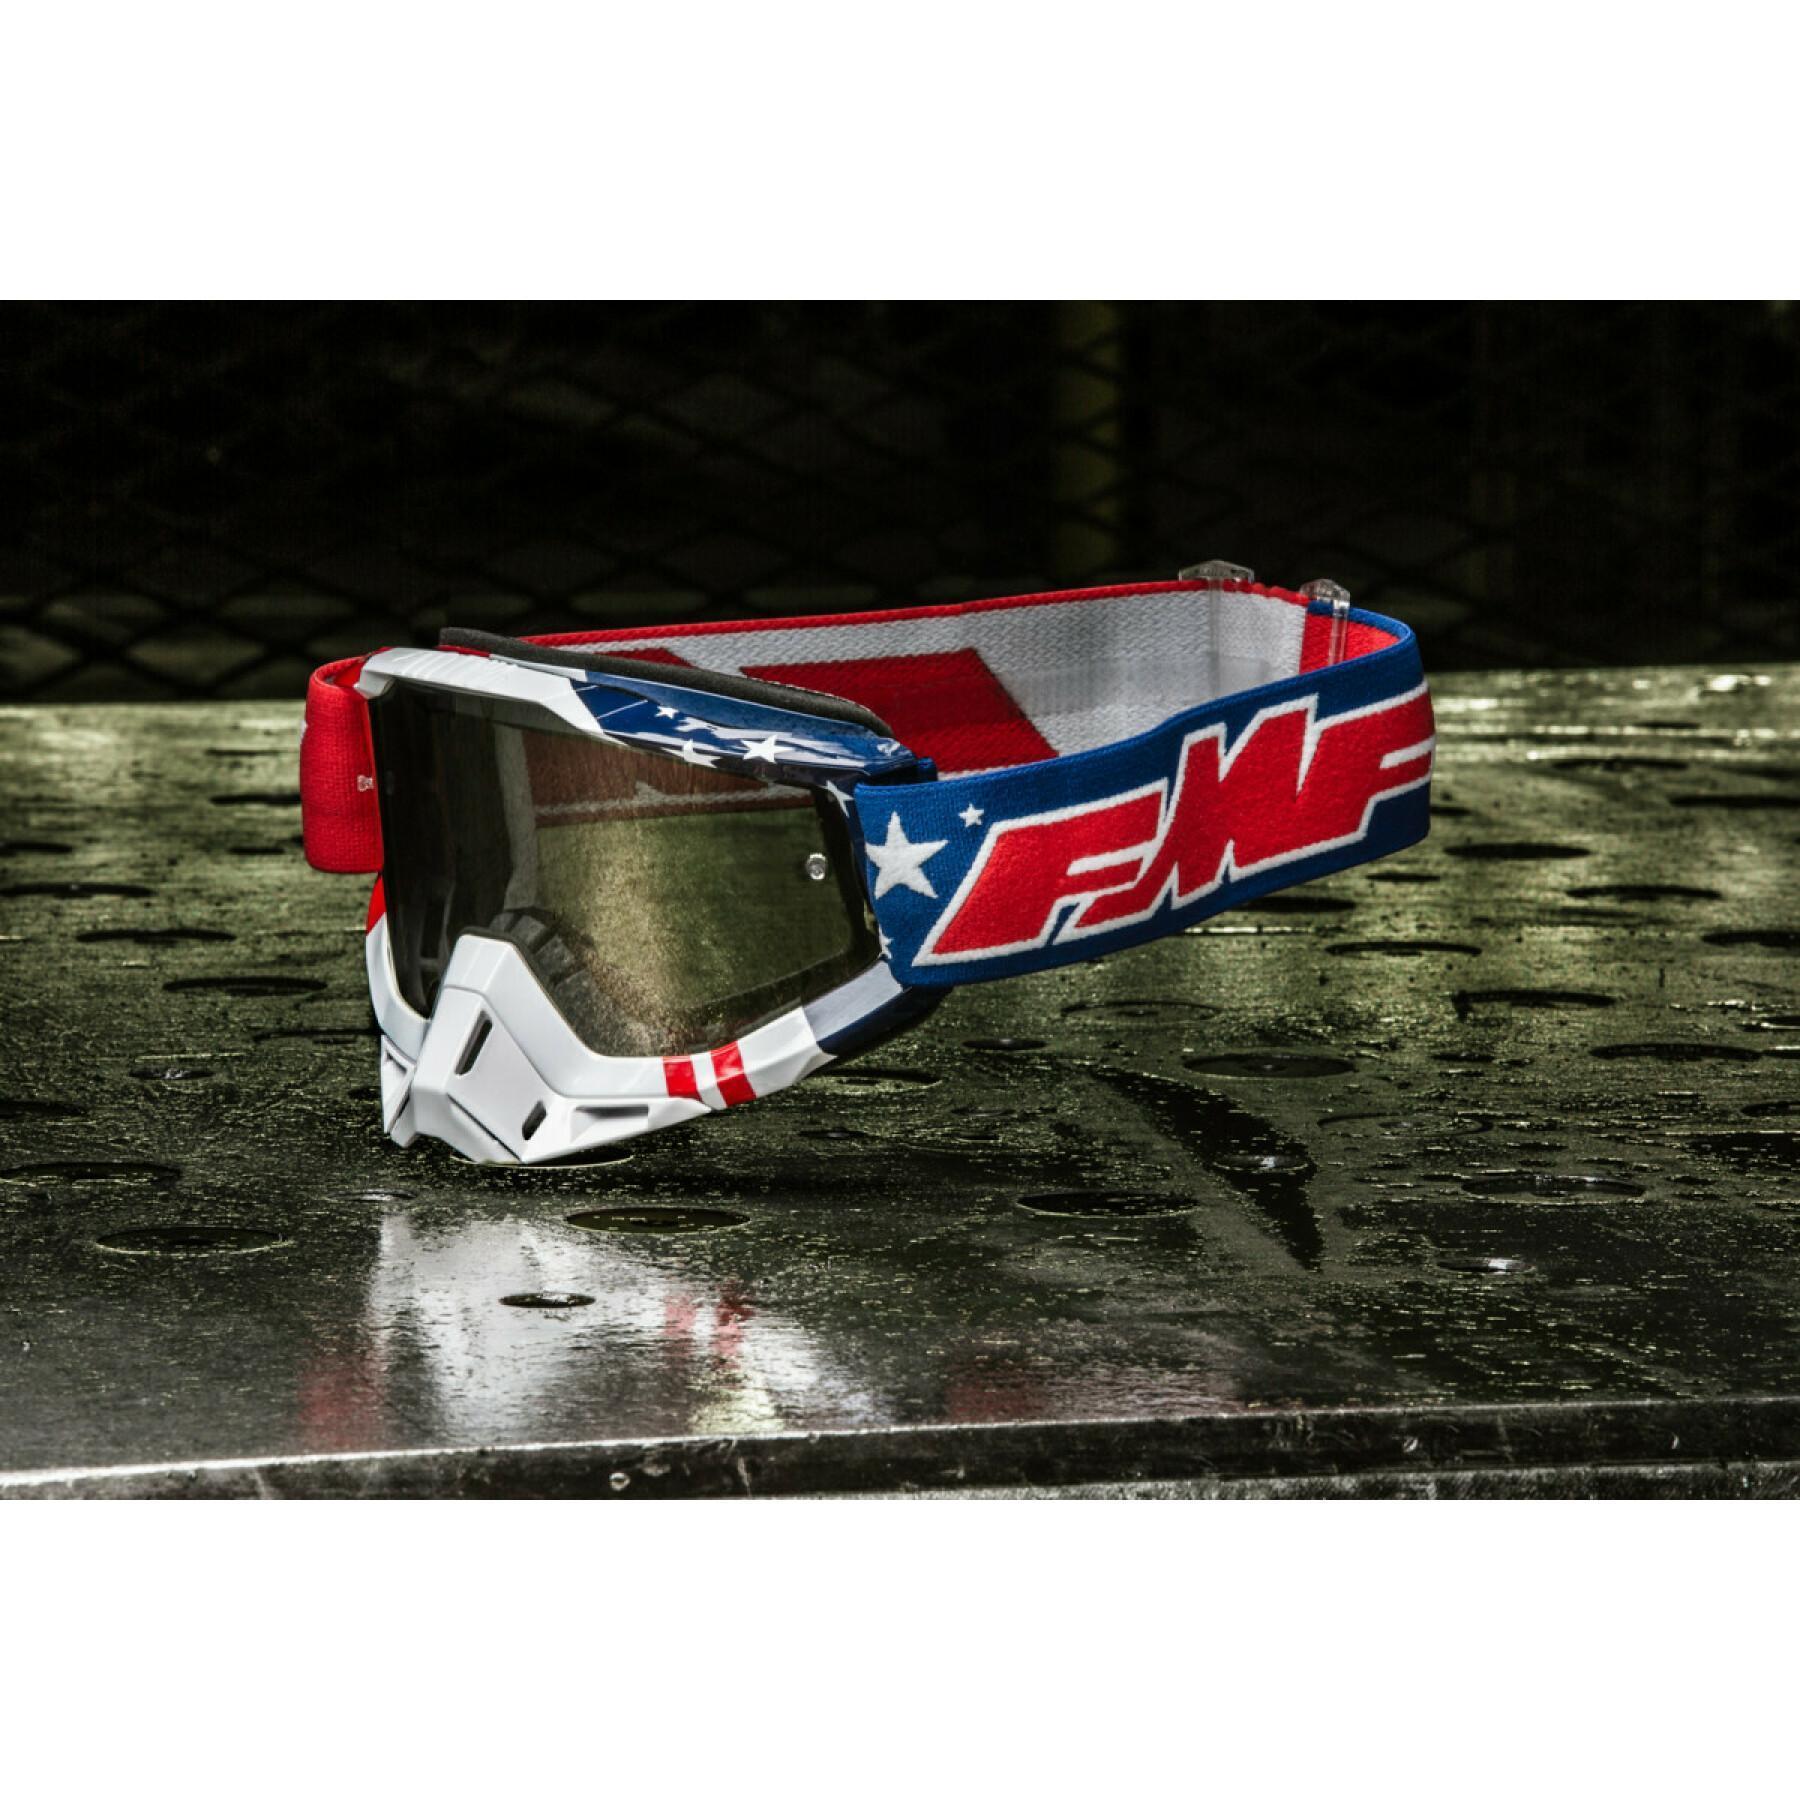 Skyddsglasögon för motocross FMF Vision us of a clr